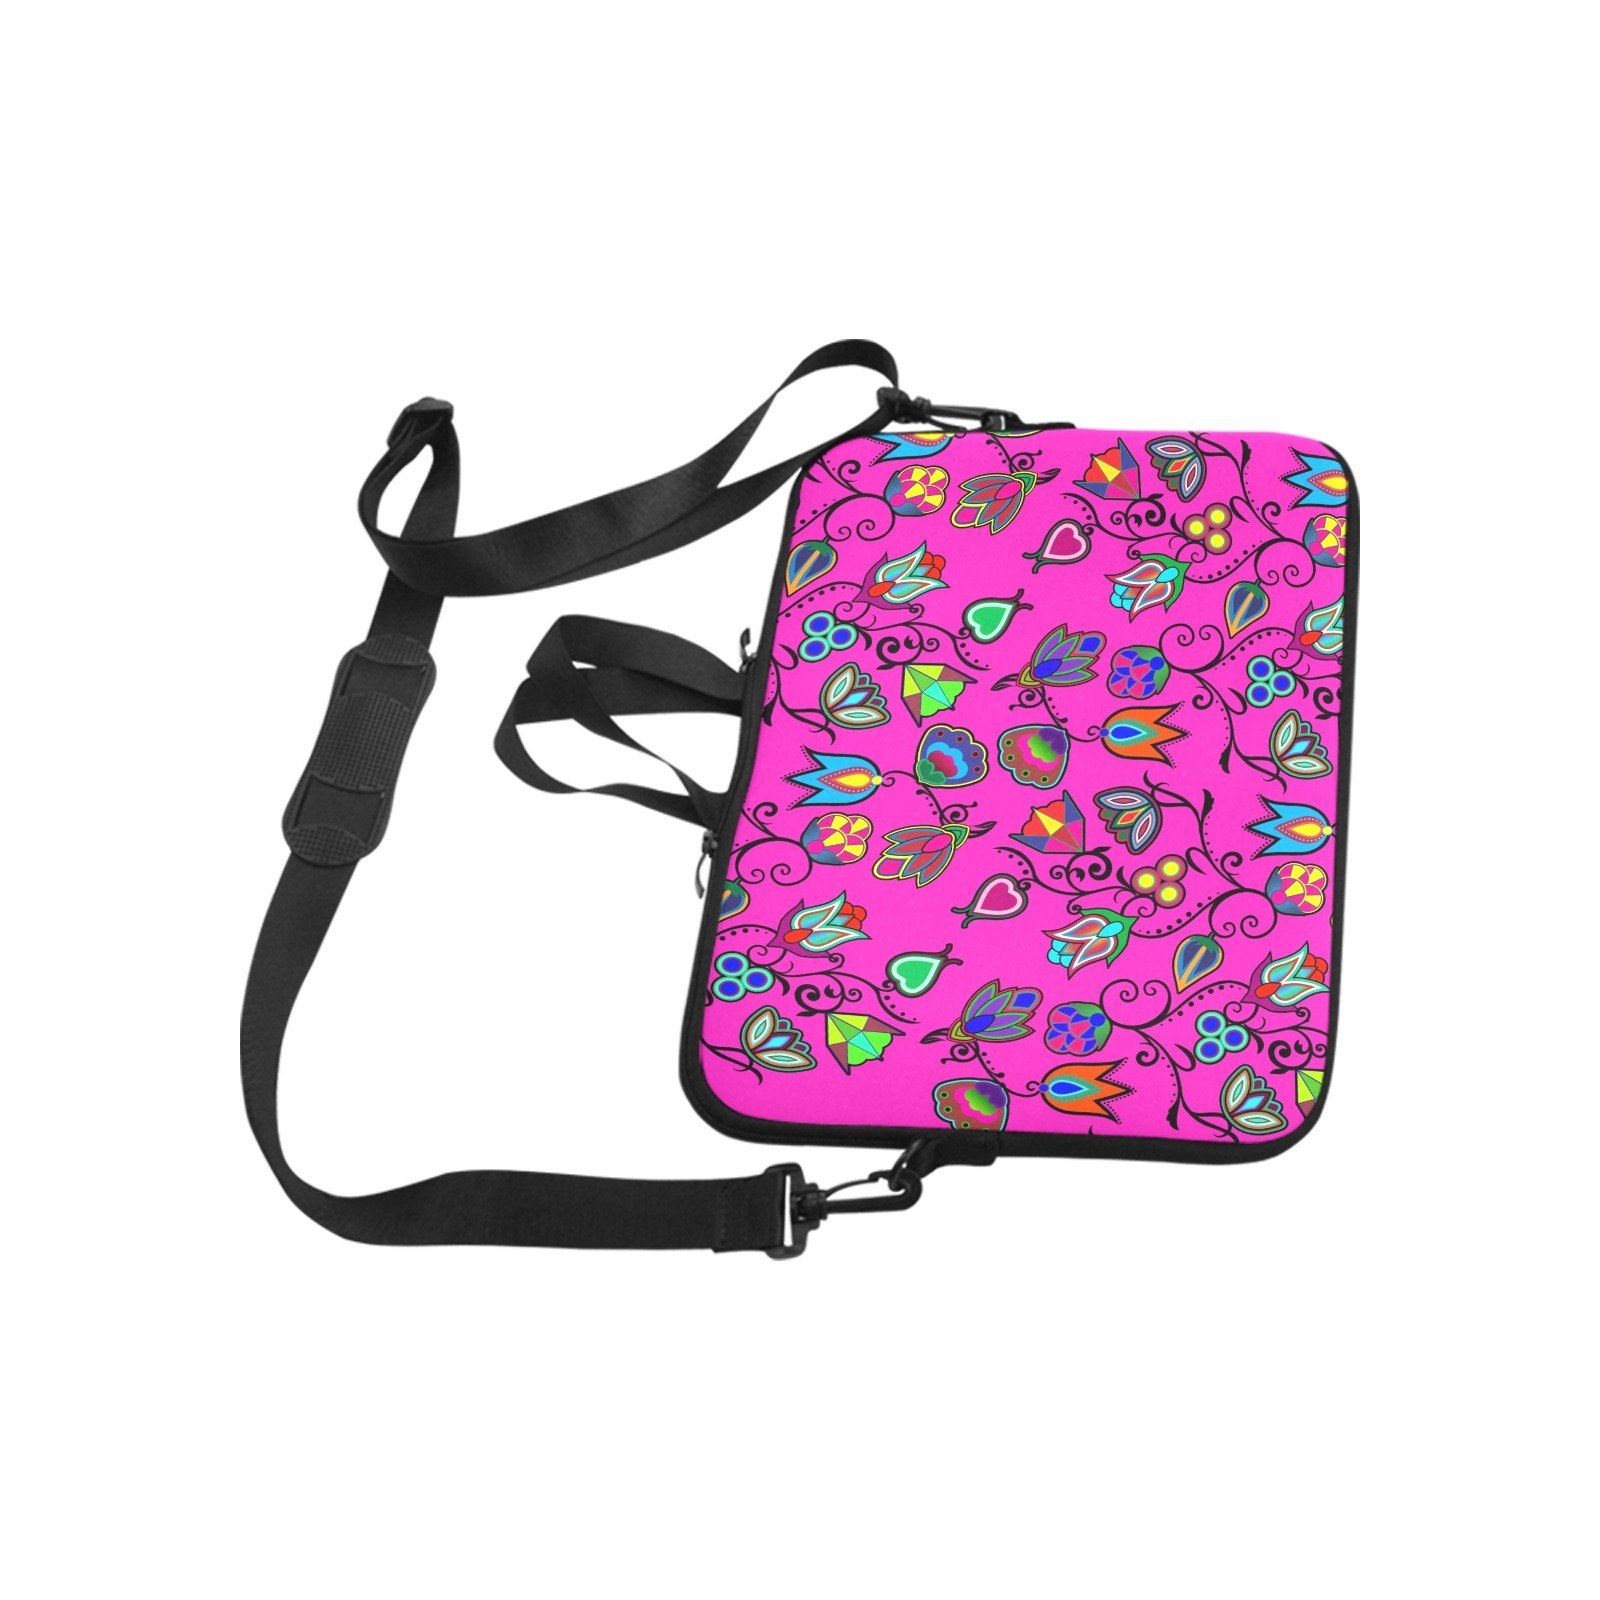 Indigenous Paisley Laptop Handbags 17" bag e-joyer 